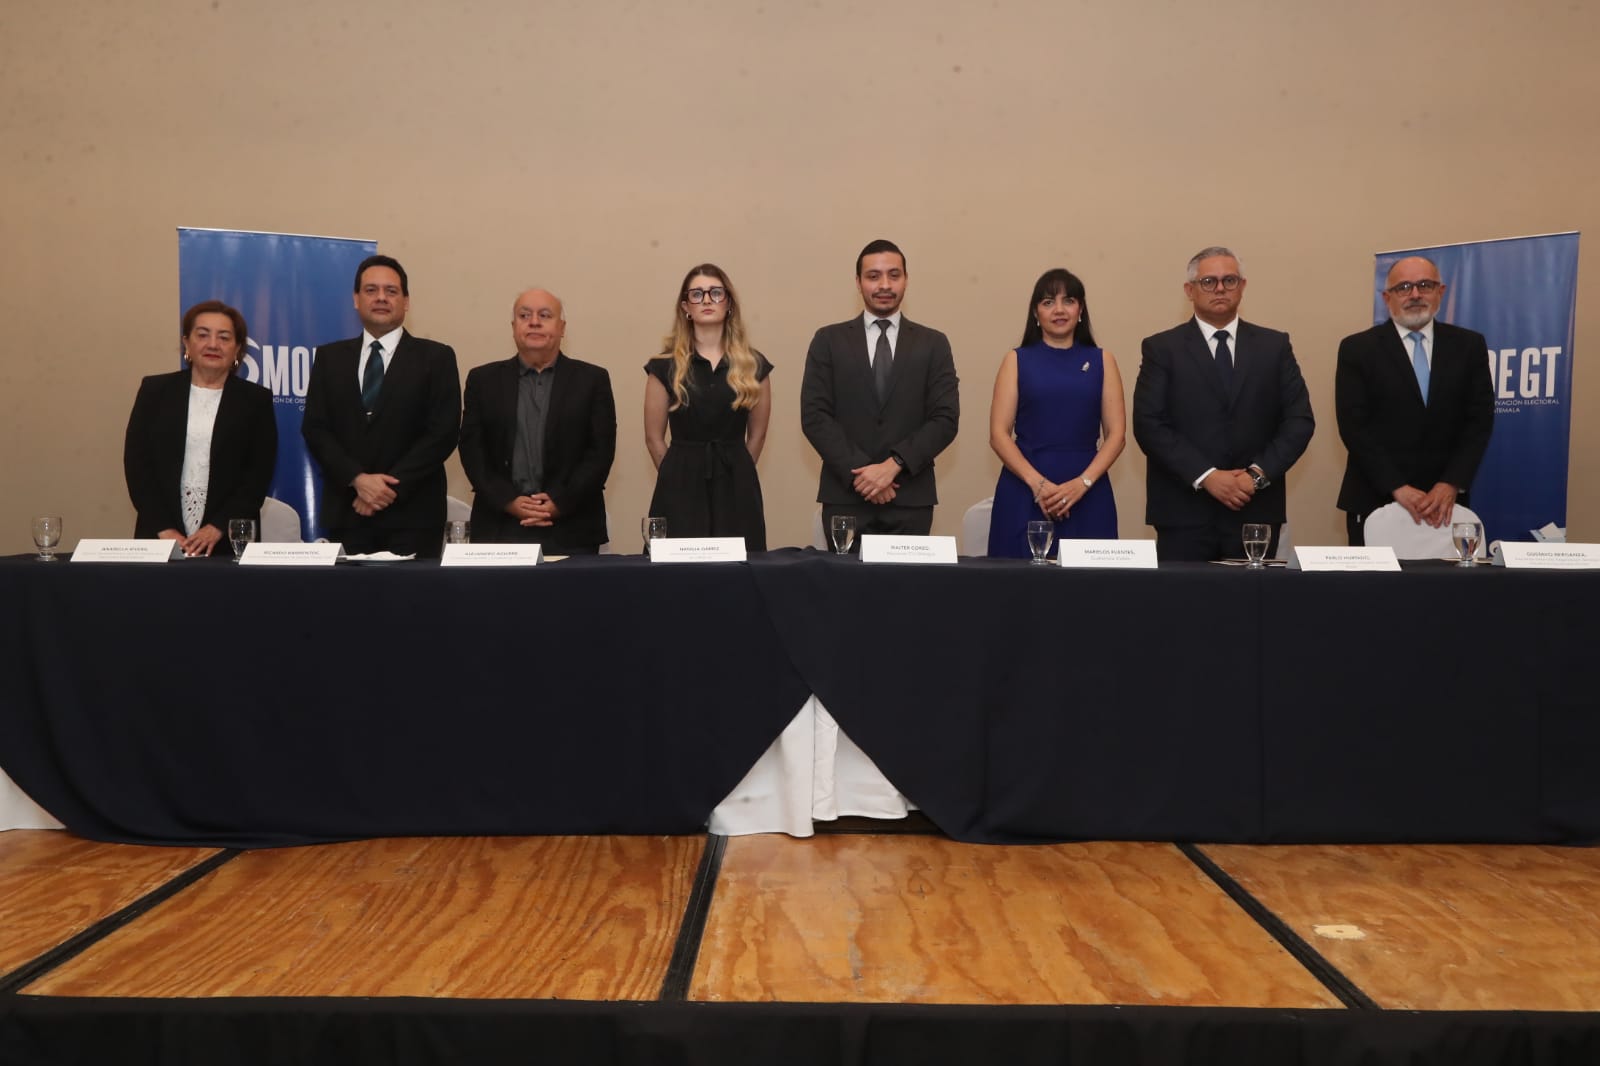 Representantes de las organizaciones civiles que formaron la la Misión de Observación Electoral de Guatemala (MOE-Gt). (Foto Prensa Libre: Elmer Vargas)